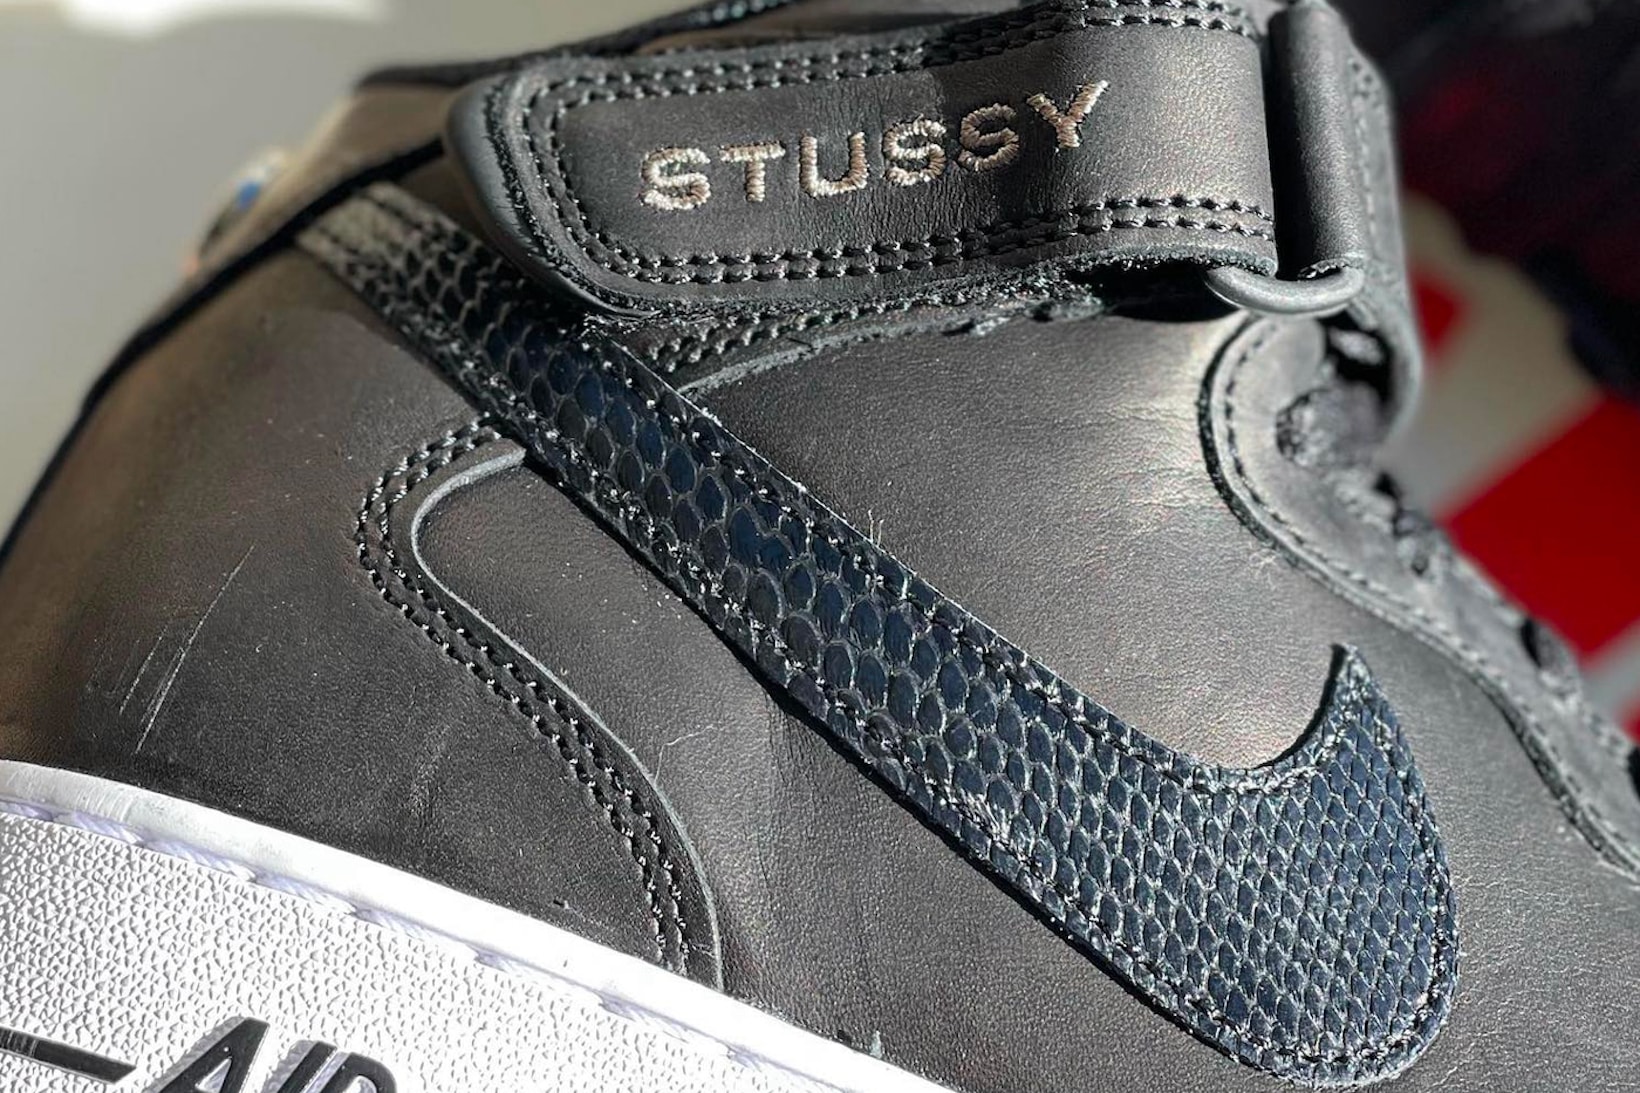 Stussy Nike Air Force 1 07 Mid SP Black Sneakers Footwear Kicks Shoes